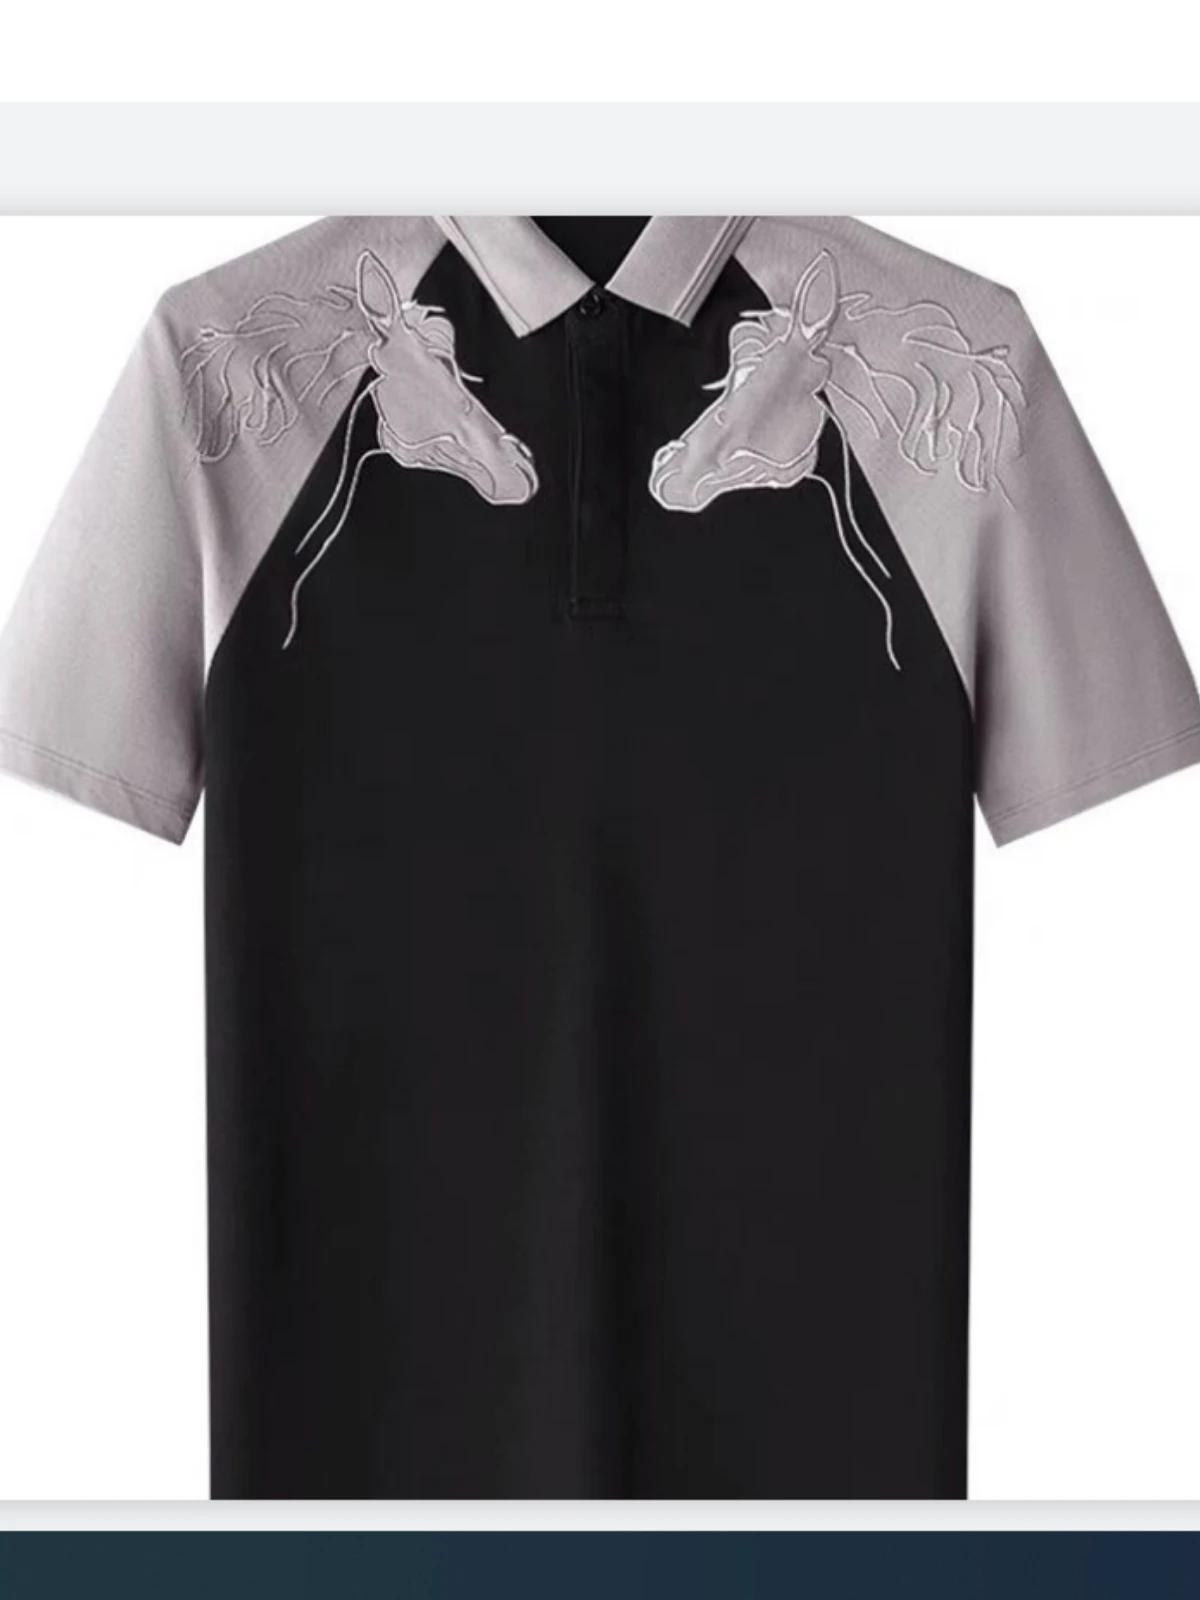 Рубашка поло Мужская футболка с коротким рукавом Роскошные бренды, дизайнеры, Мужская одежда, топы с вышивкой, Корейская модная рубашка, Новая